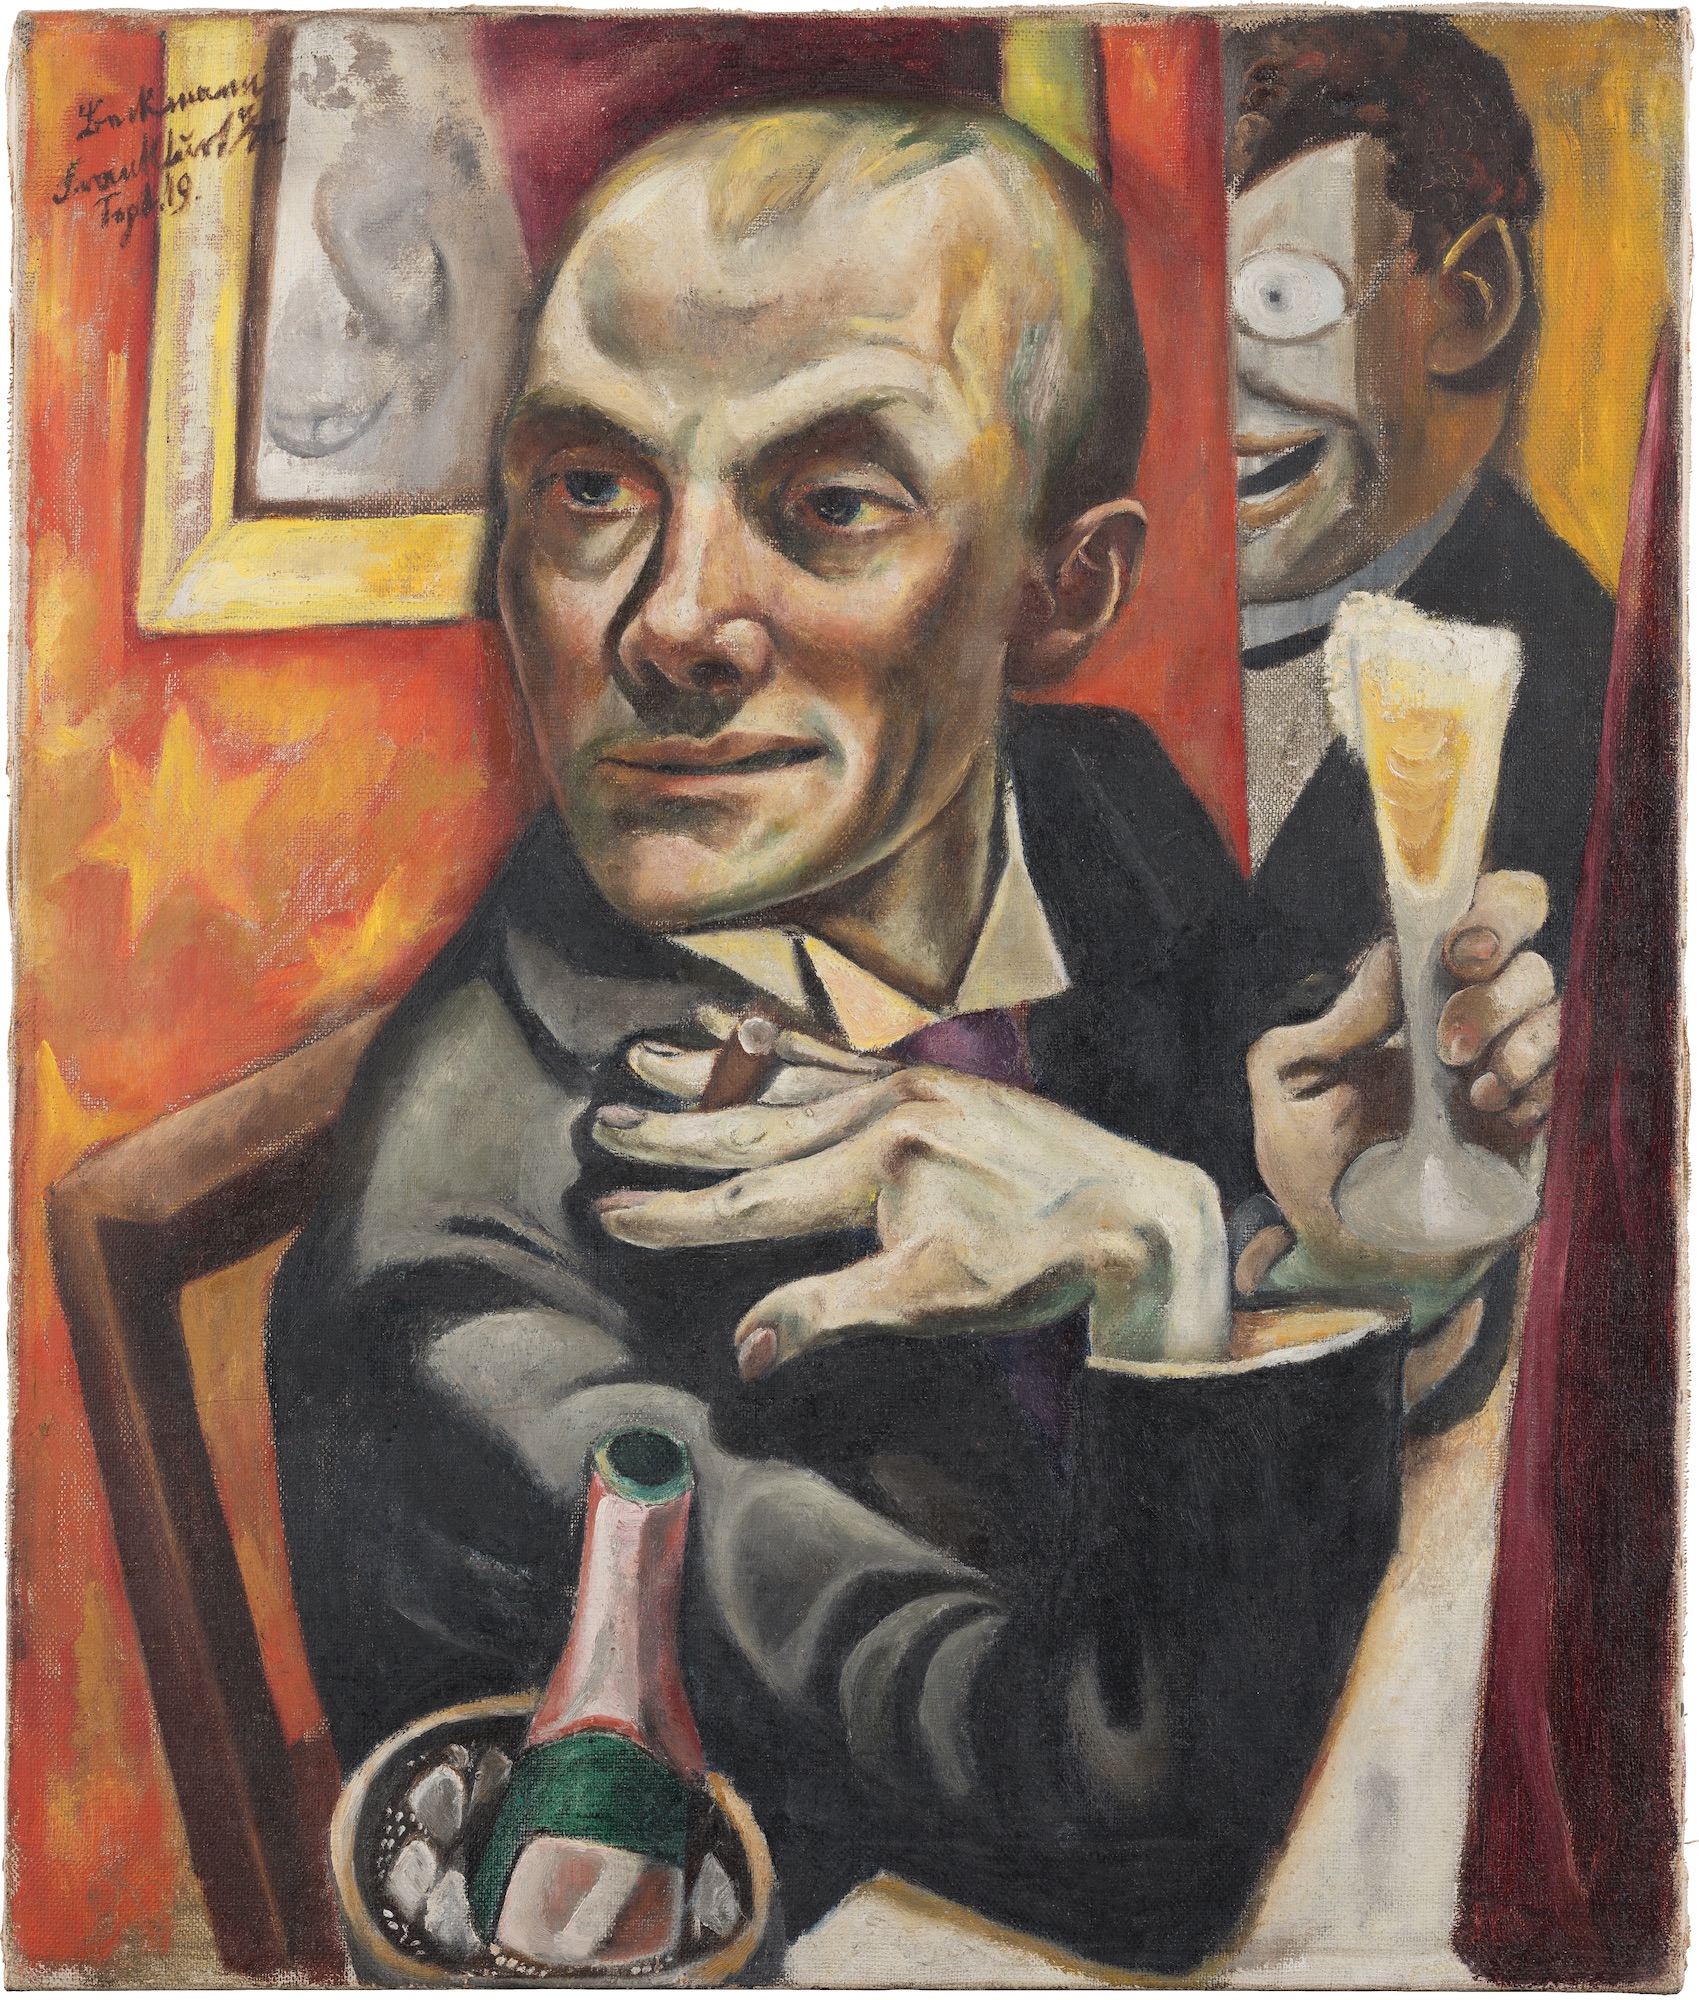 Şampanya Bardağıyla Otoportre (orig. "Self-Portrait with Champagne Glass") by Max Beckmann - 1919 - 65,0 x 55,5 cm 